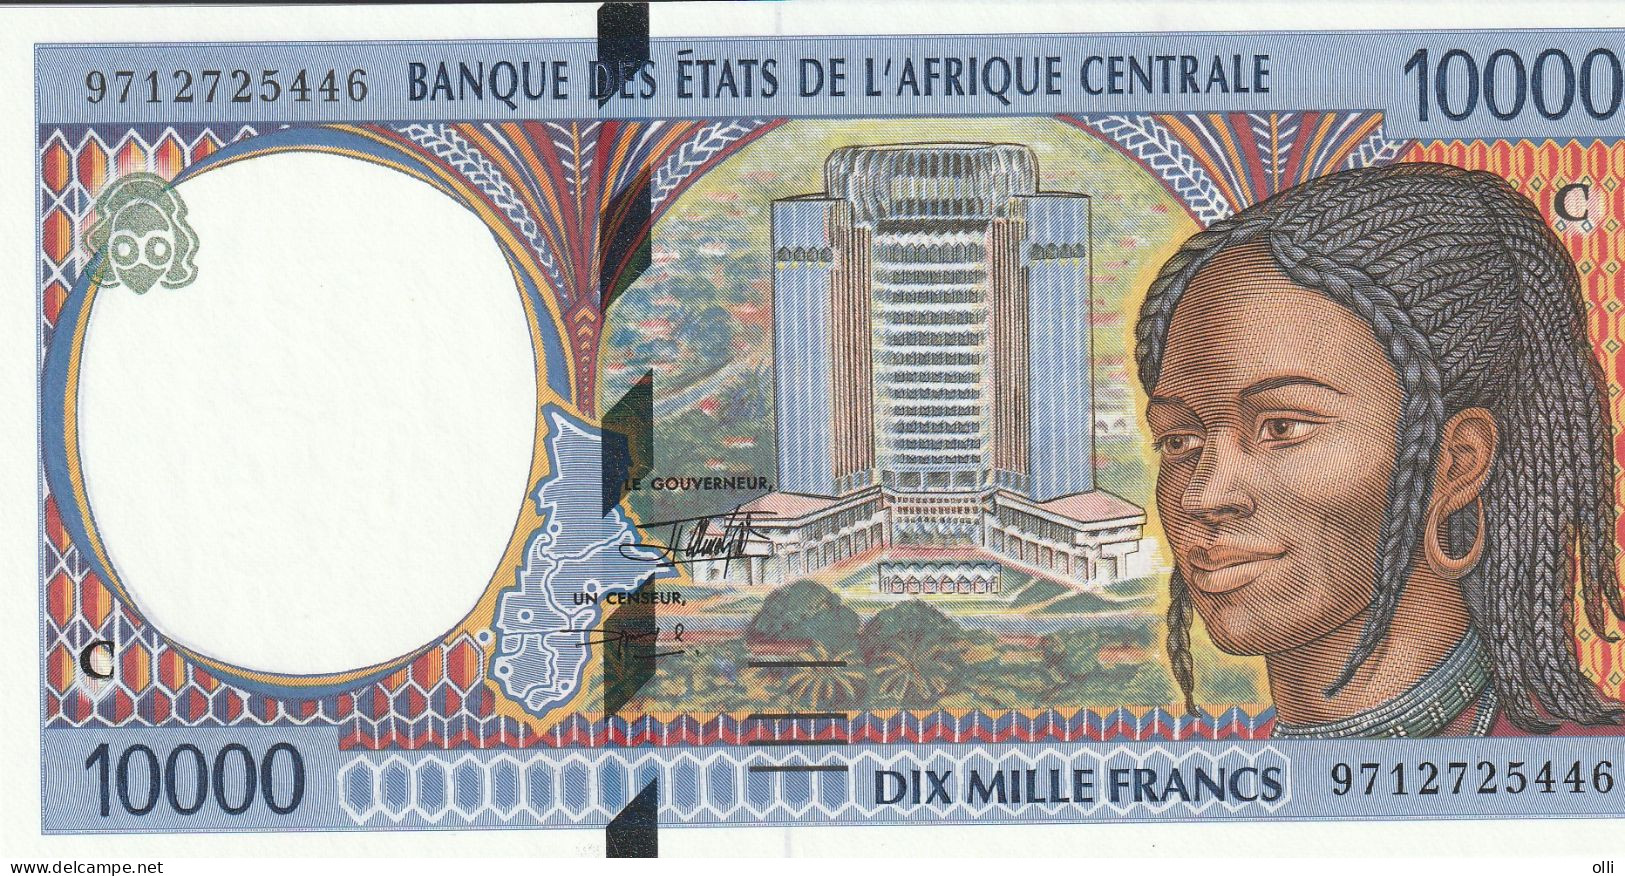 Banque Des états De L'afrique Centrale 10000 Francs Lettre C Republic Of Congo - Other - Africa